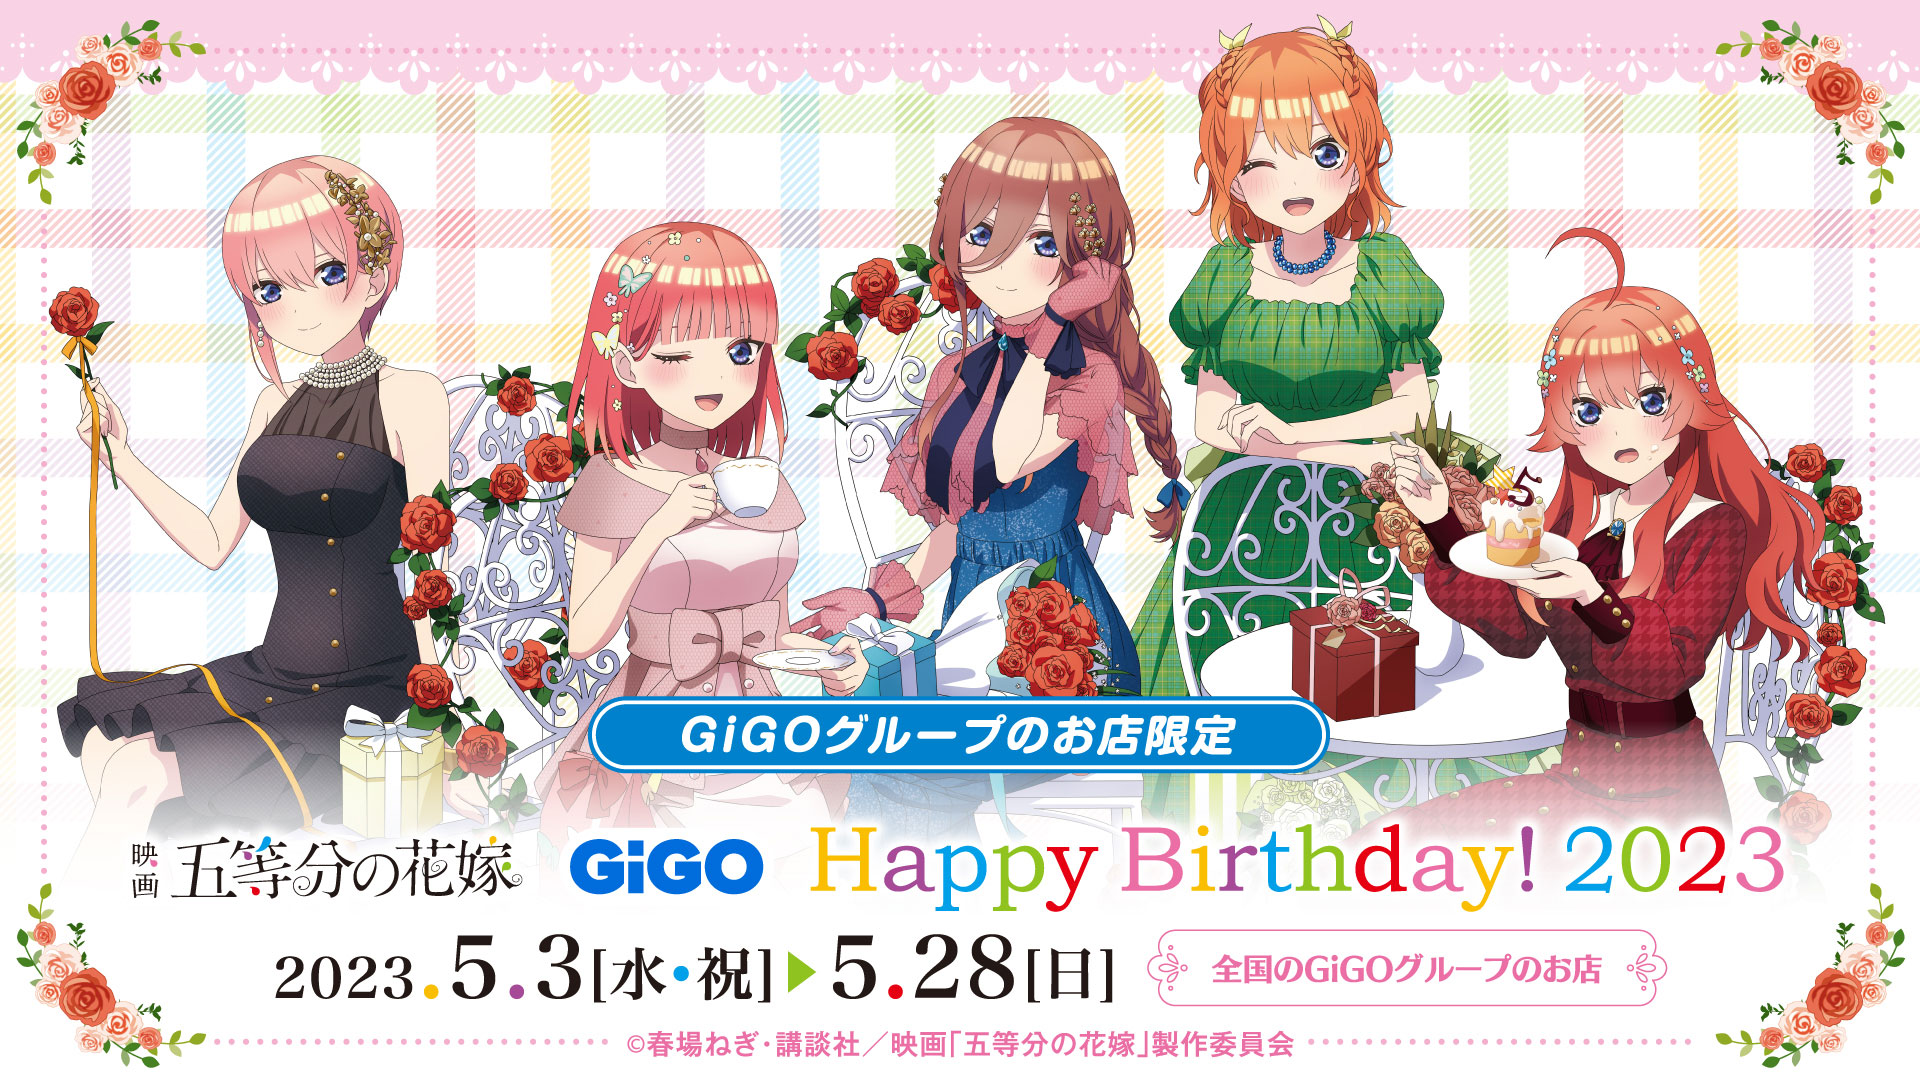 映画『五等分の花嫁』×GiGOコラボ Happy Birthday! 2023開催!!